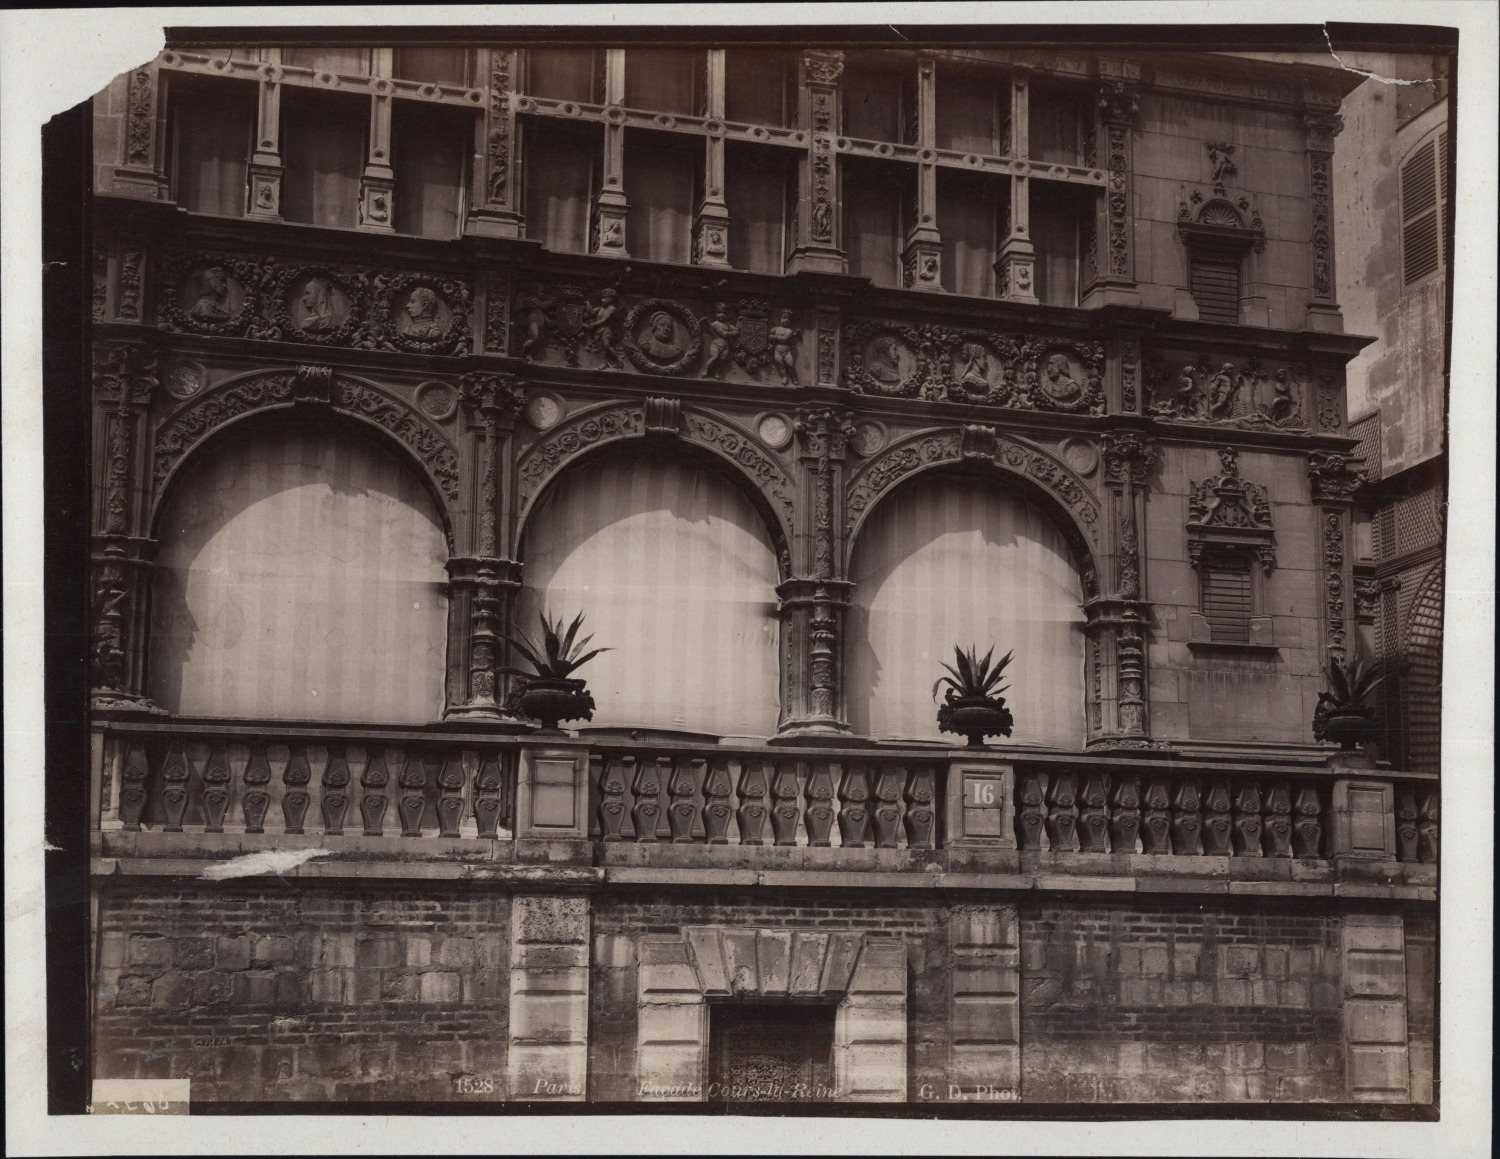 Paris, Cour-la-Reine façade, ca.1880, vintage albumin print vintage print, le